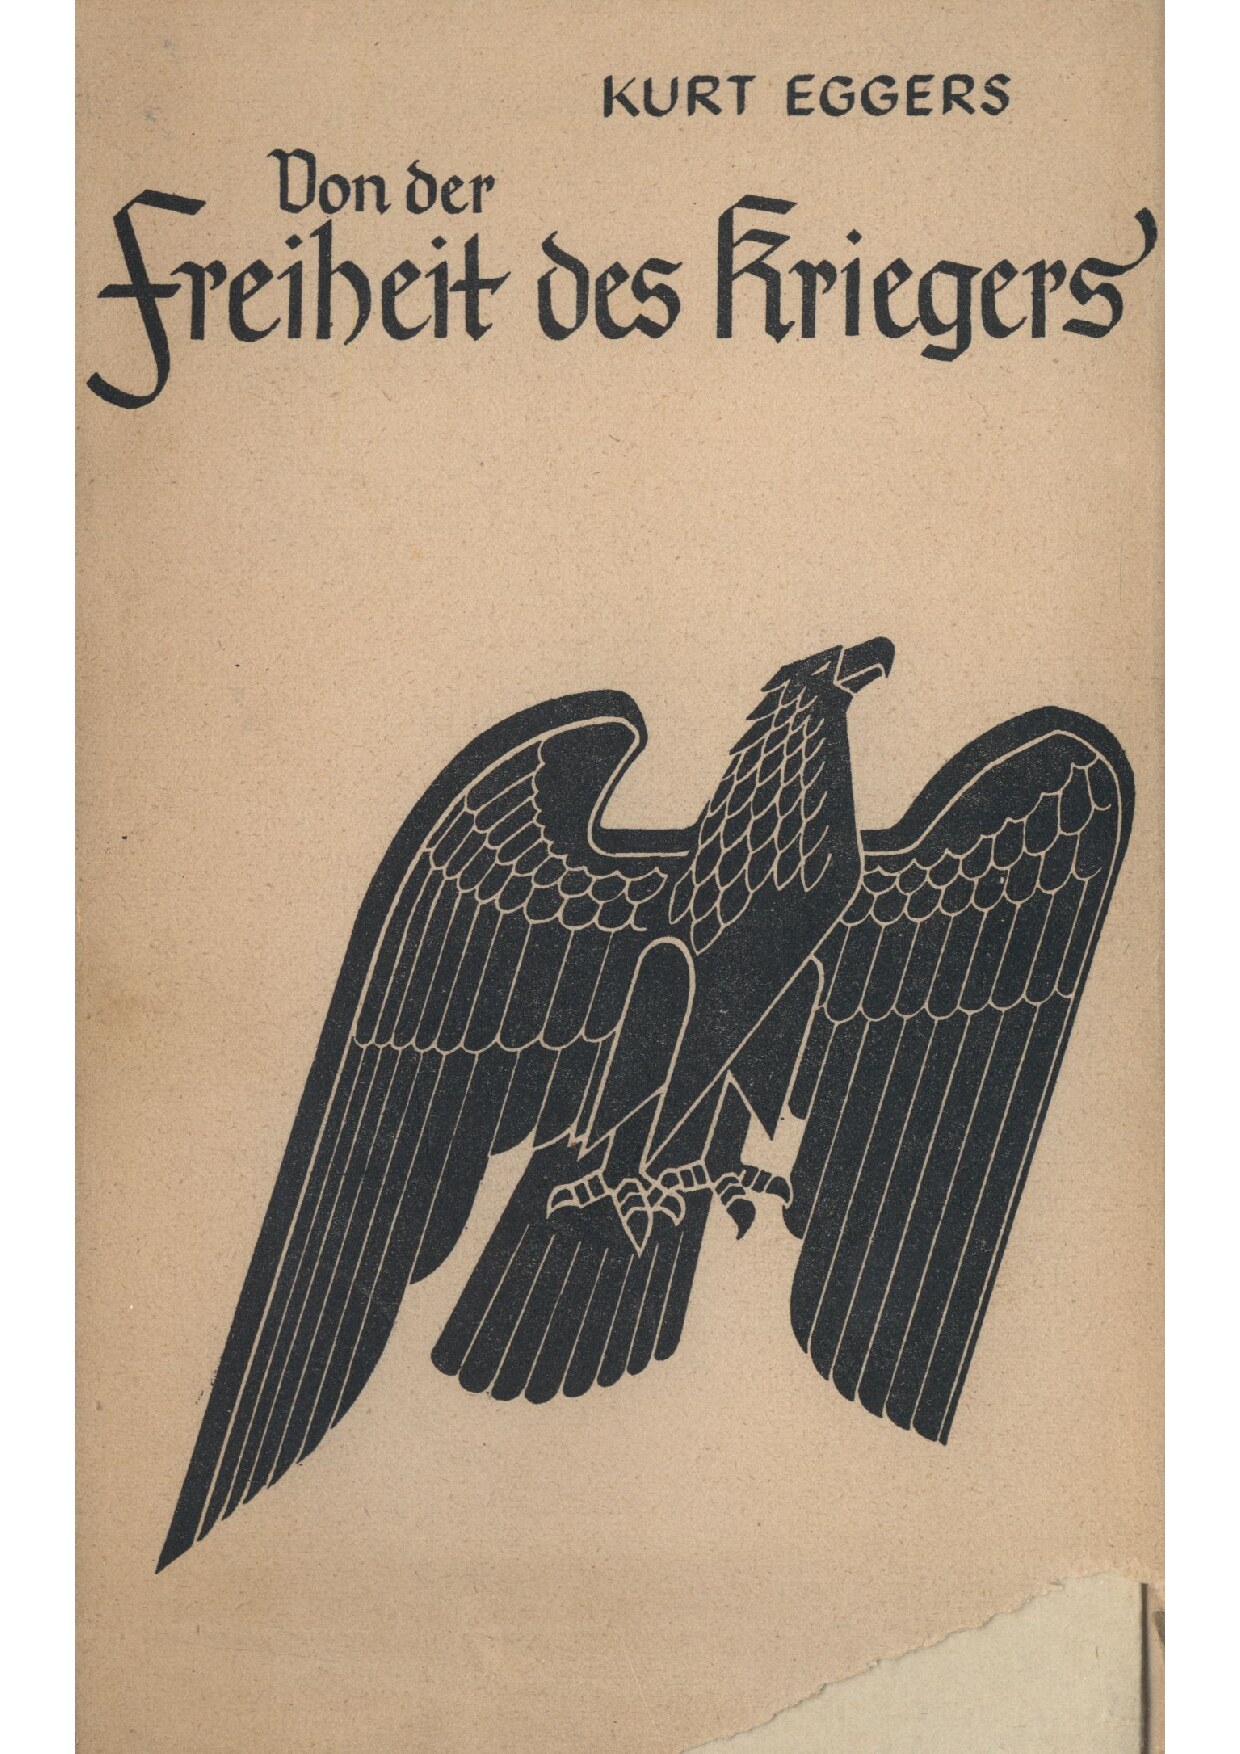 Von der Freiheit des Kriegers (1941, 65 S., Scan, Fraktur)